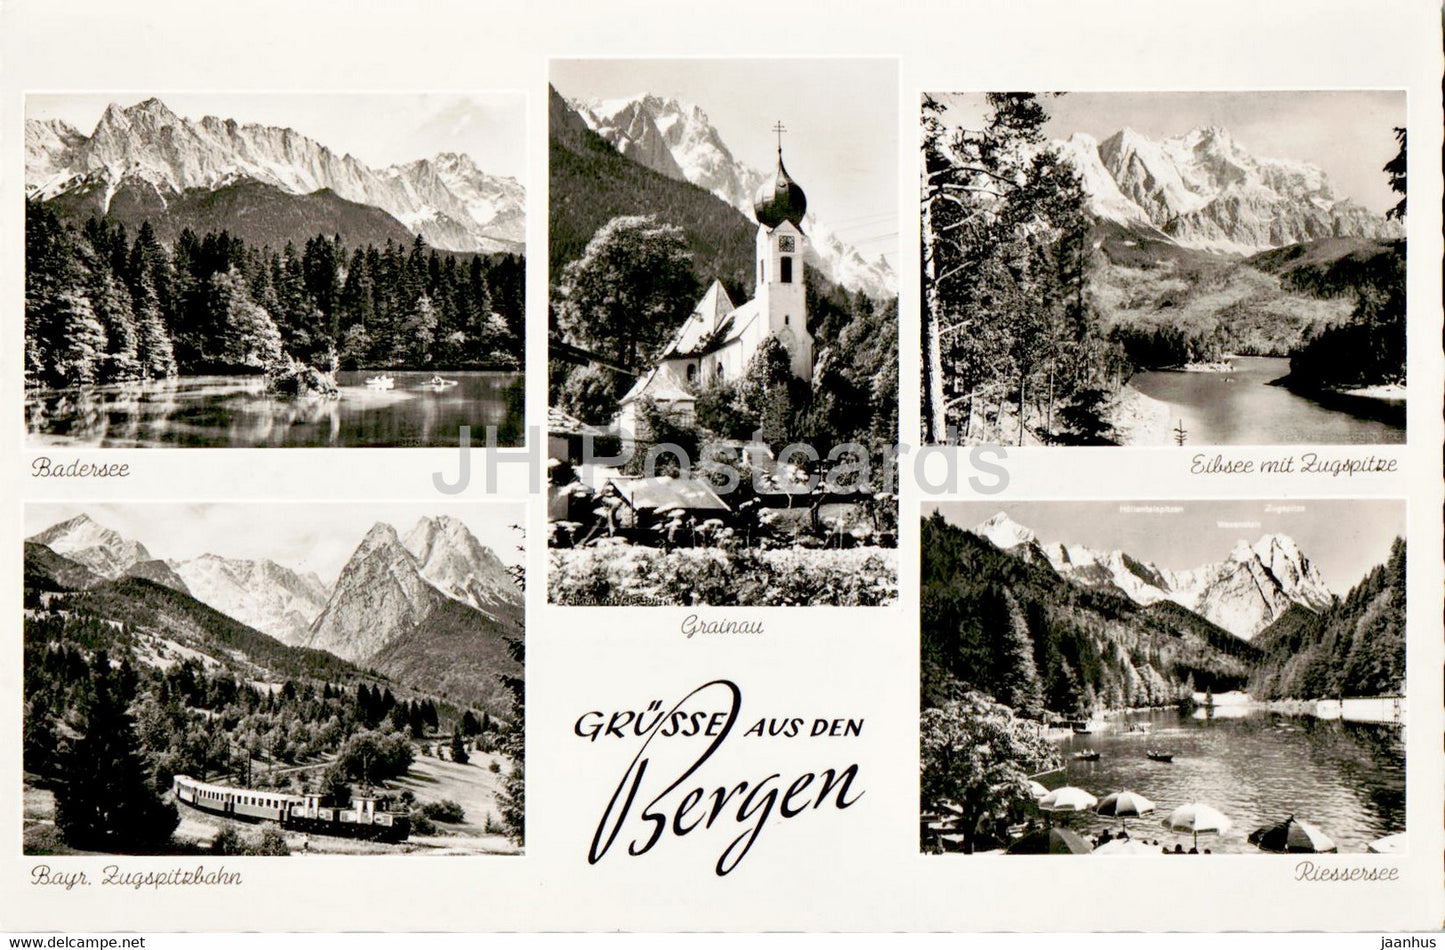 Grusse aus den Bergen - Badersee - Grainau - Eibsee - Riessersee - train - old postcard - 1956 - Germany - used - JH Postcards